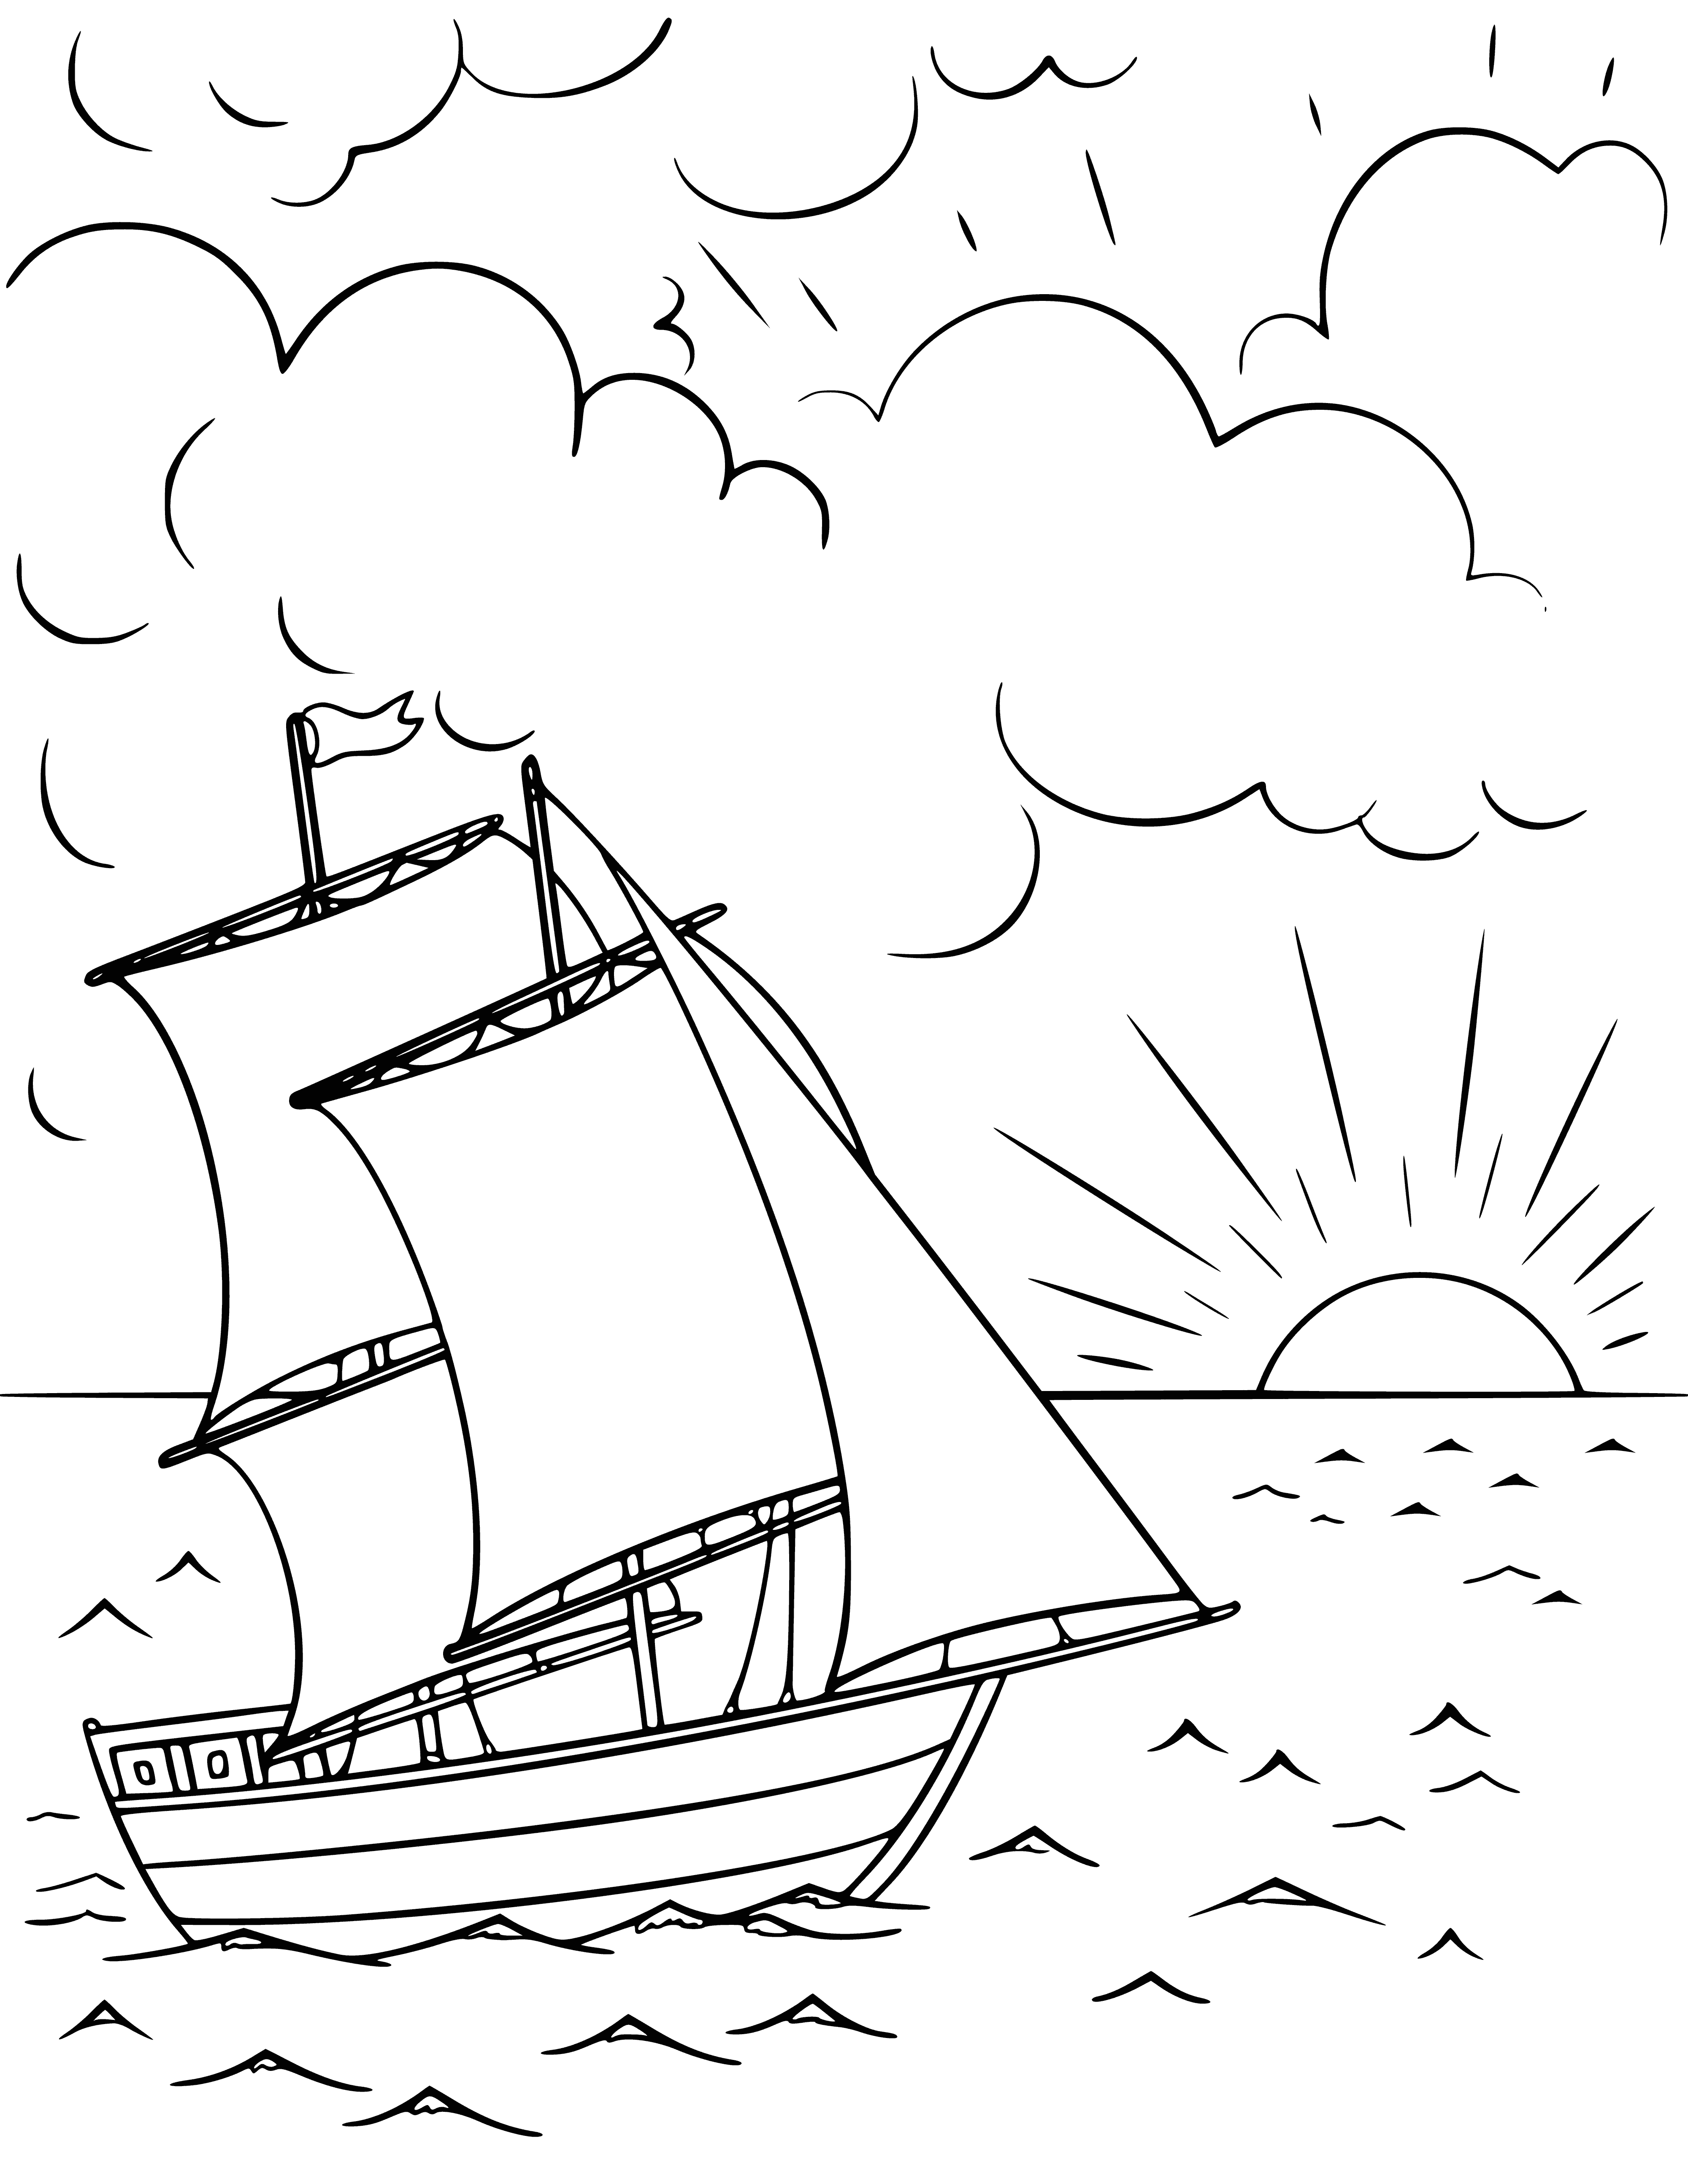 Sailboat at sunset coloring page